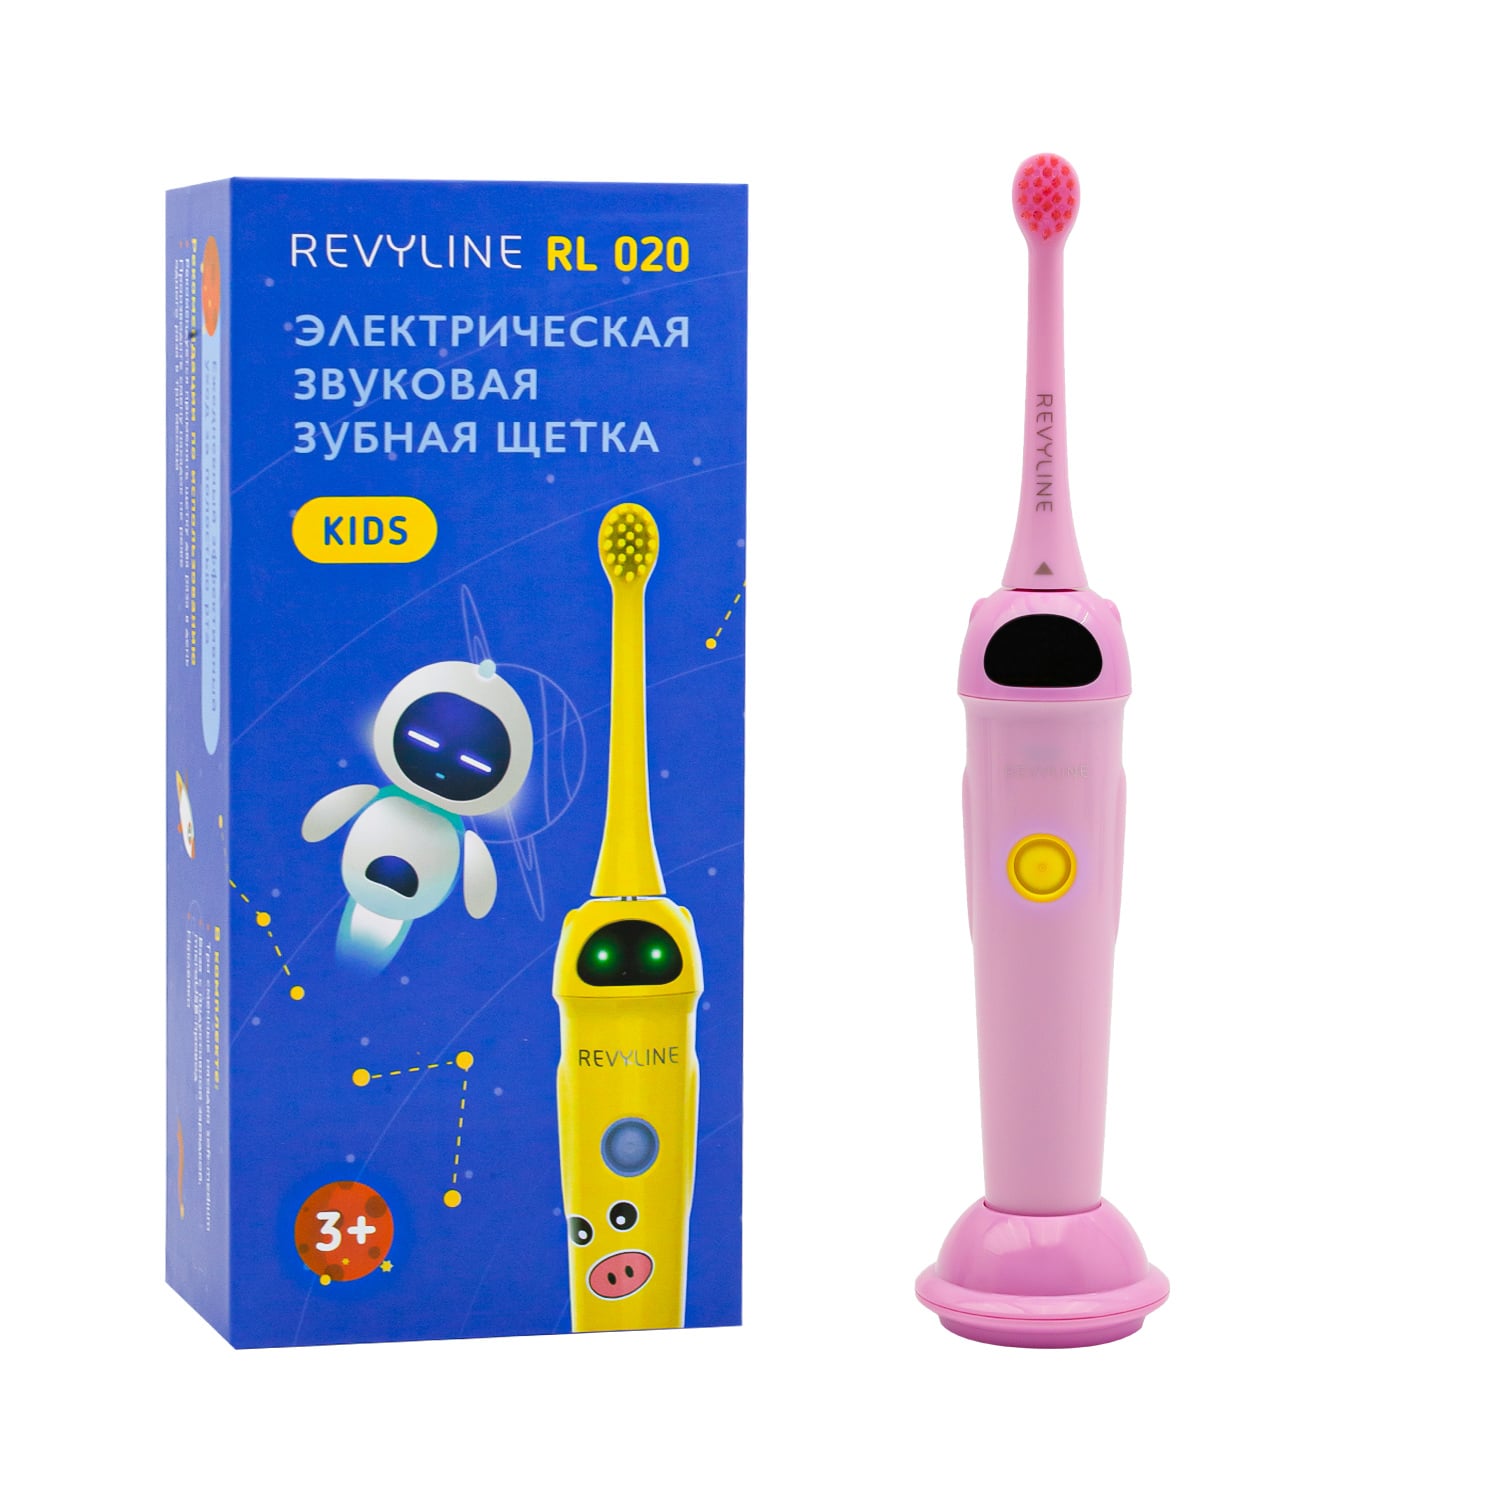 REVYLINE Детская электрическая звуковая зубная щетка RL 020 3+, розовая, 1 шт (REVYLINE, Электрические зубные щетки)